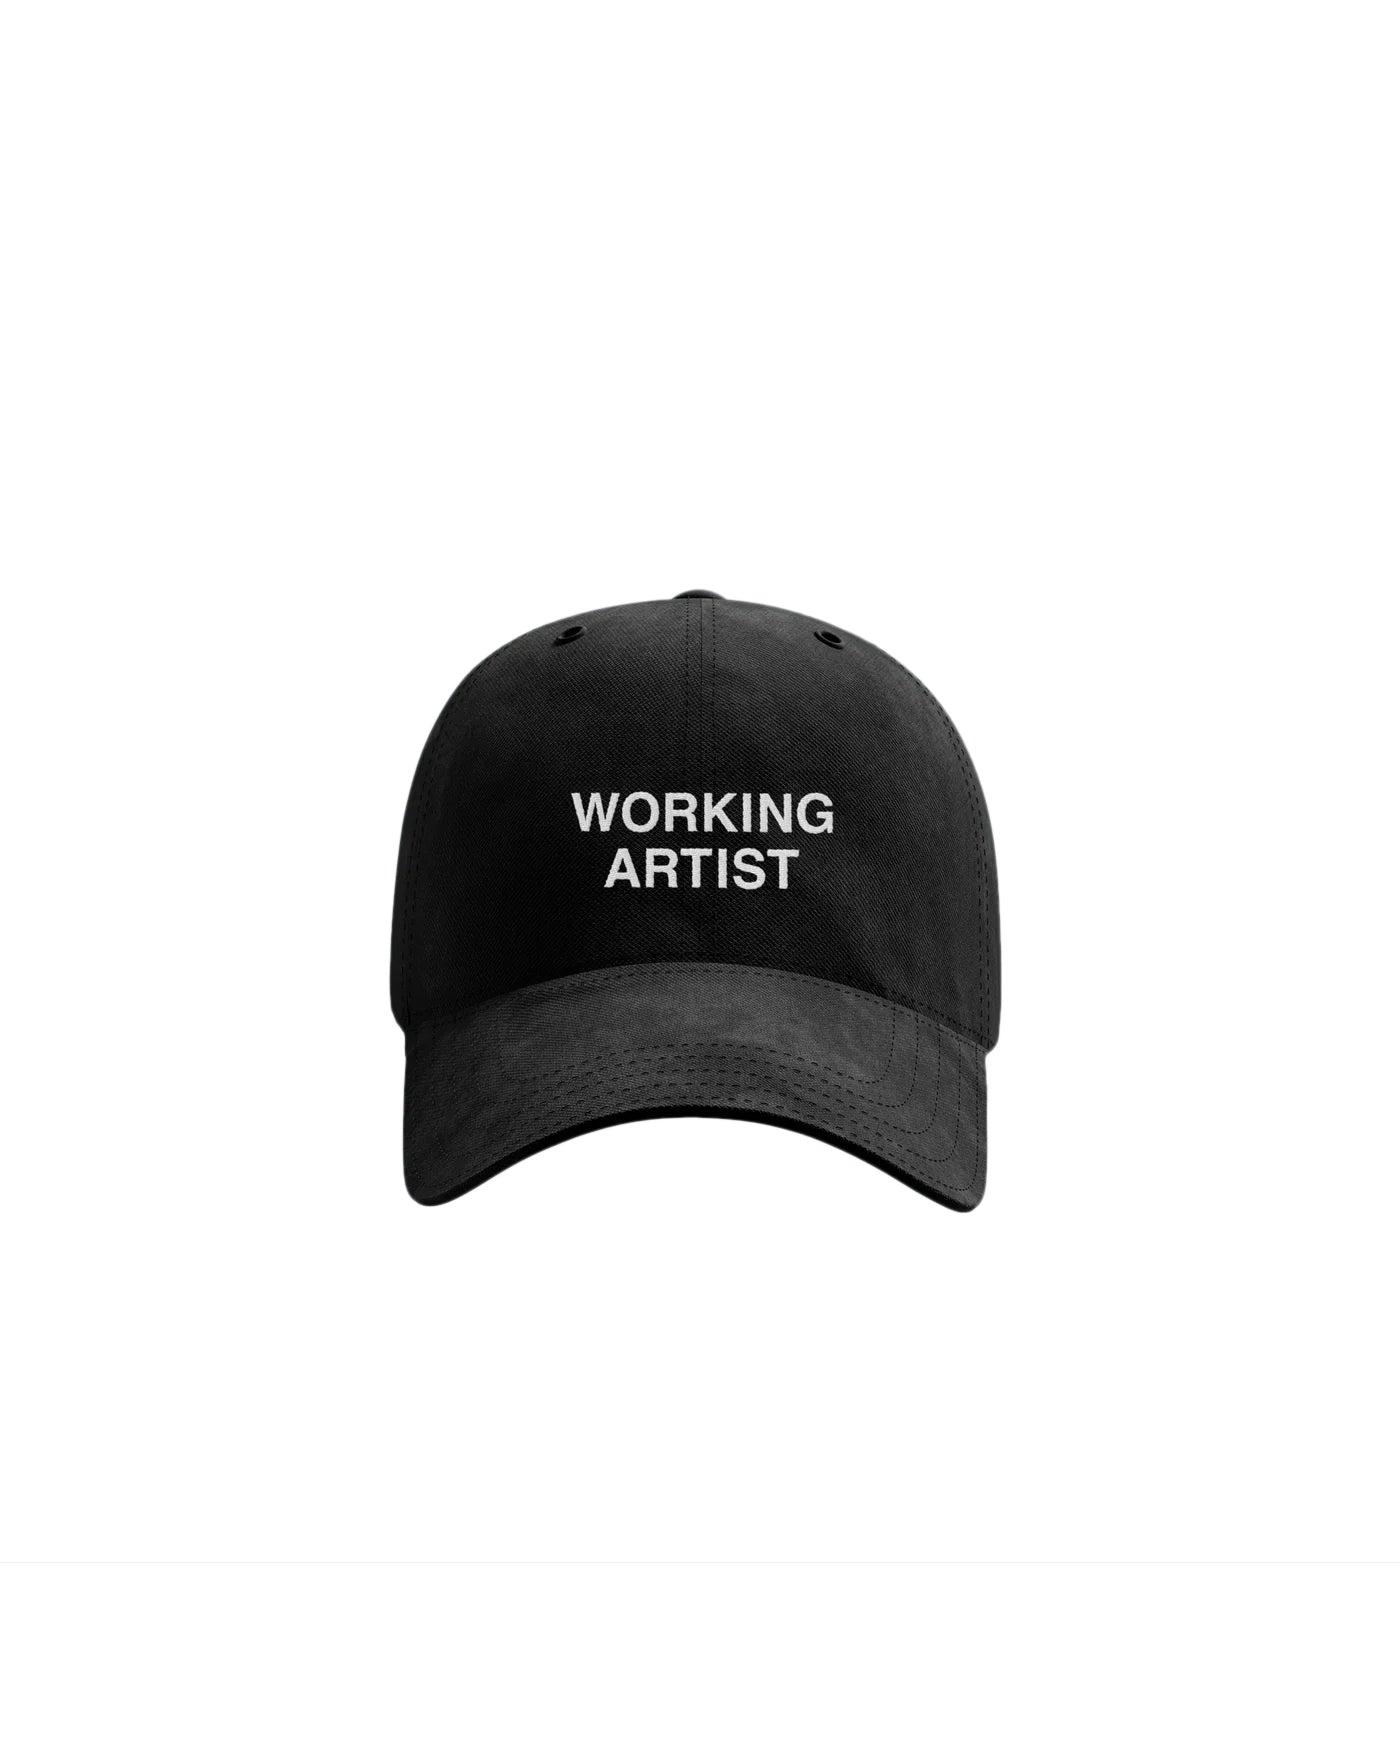 Working Artist Dad Hat